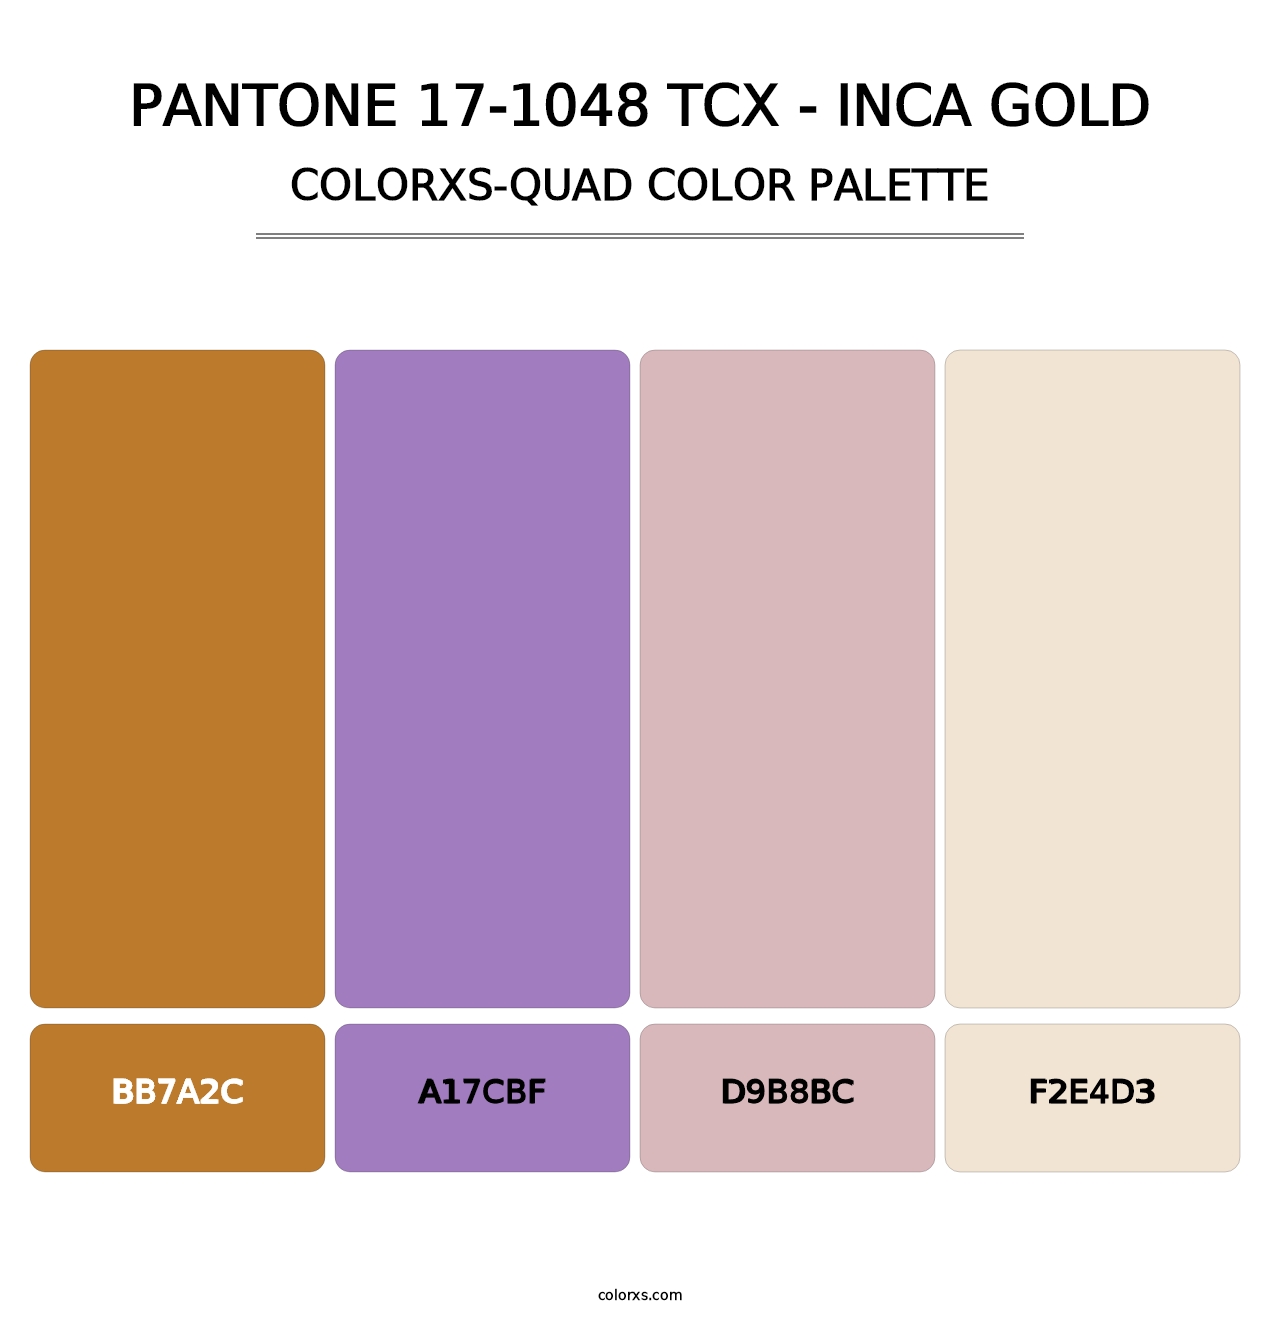 PANTONE 17-1048 TCX - Inca Gold - Colorxs Quad Palette